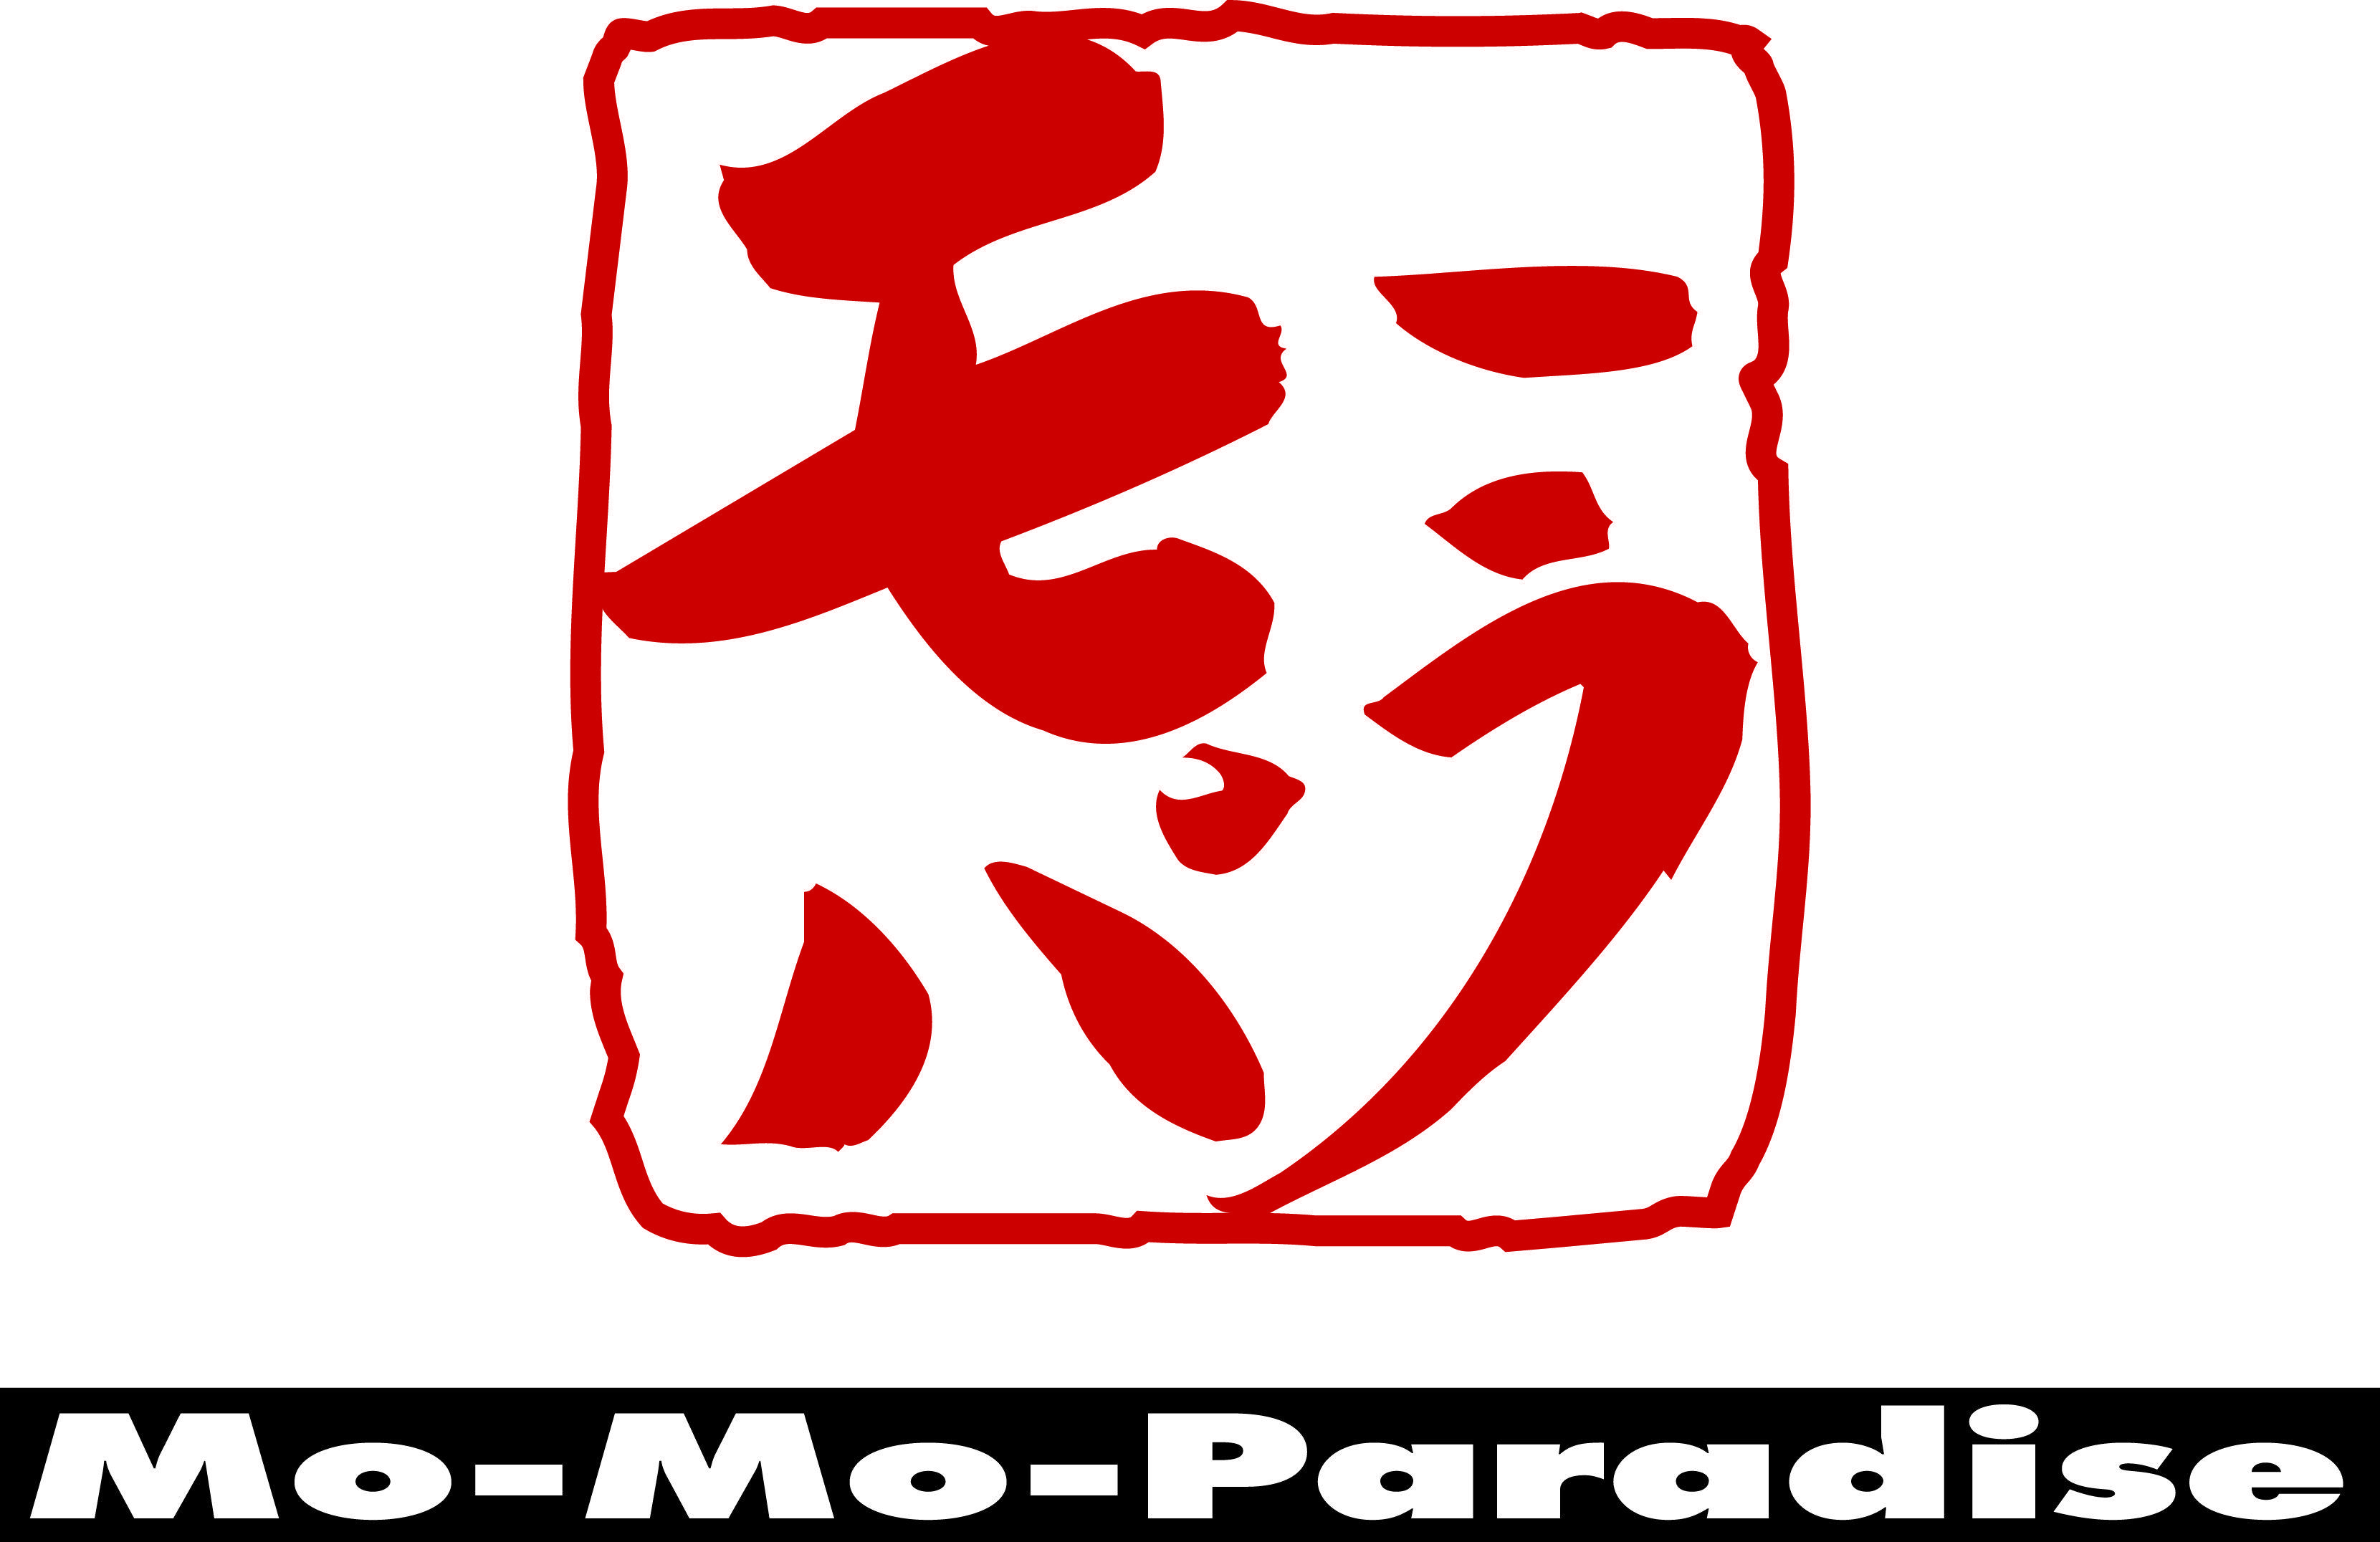 Tomator Paradise Logo - Roasted Tomato Soup. Momo Paradise Indonesia